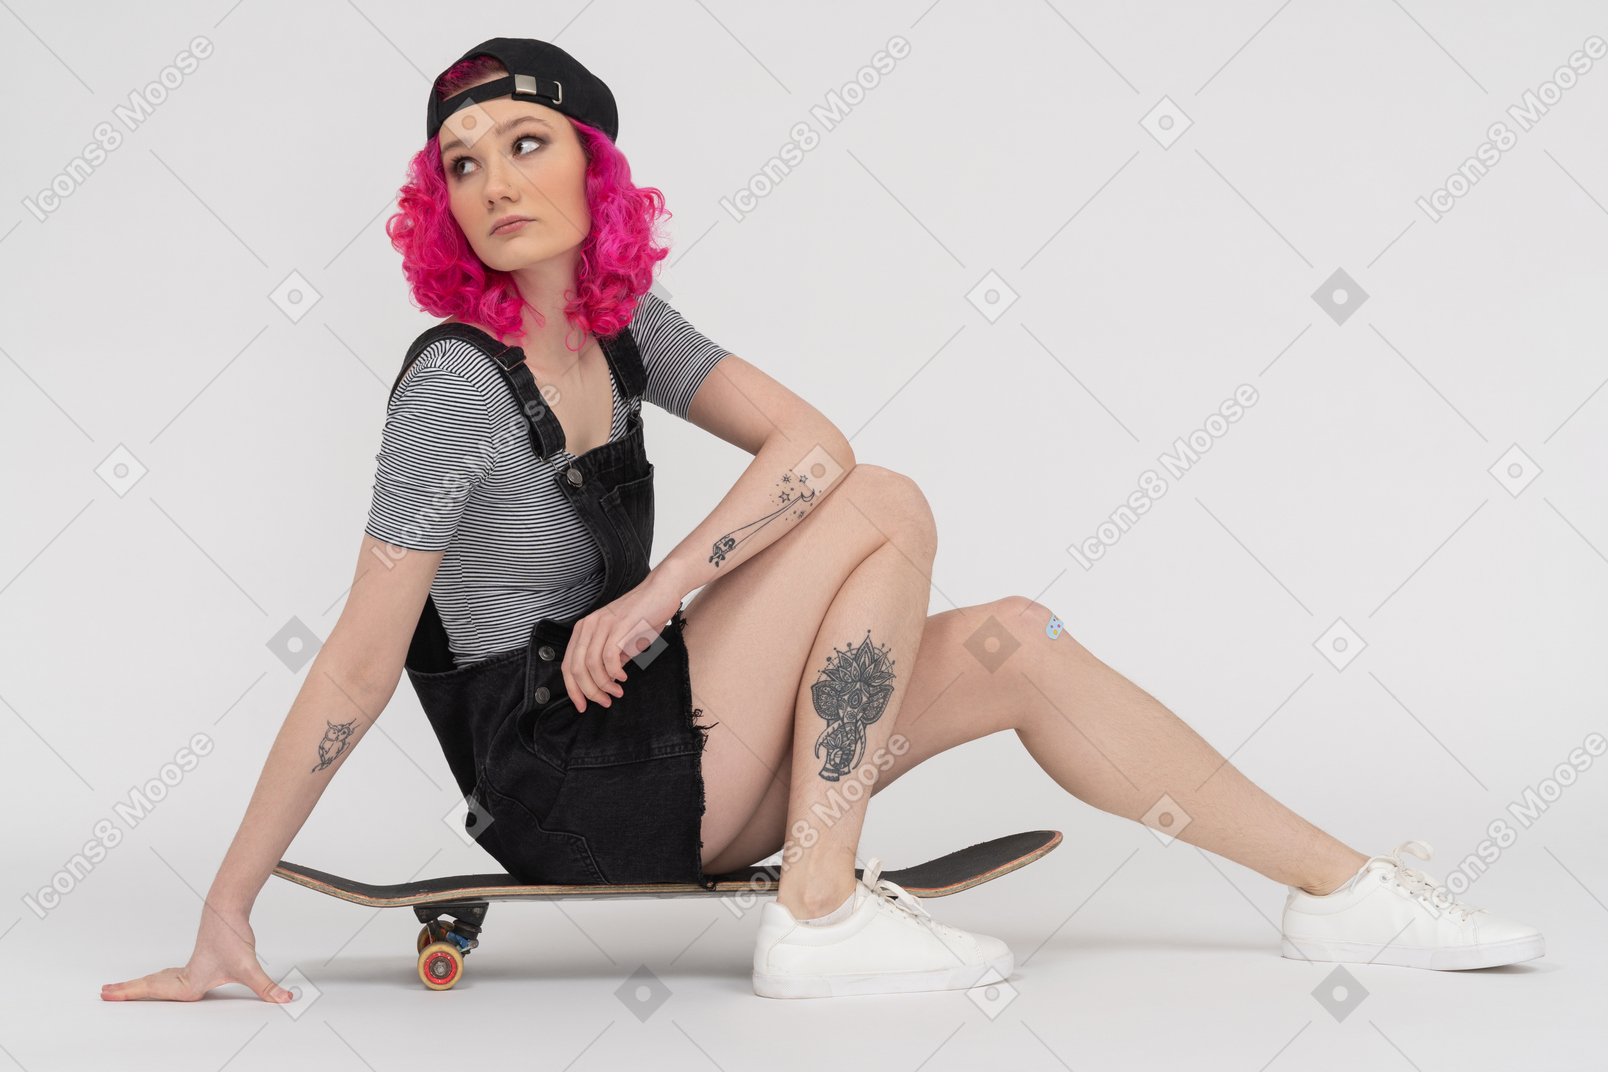 Fille tatouée aux cheveux roses assis sur une planche à roulettes